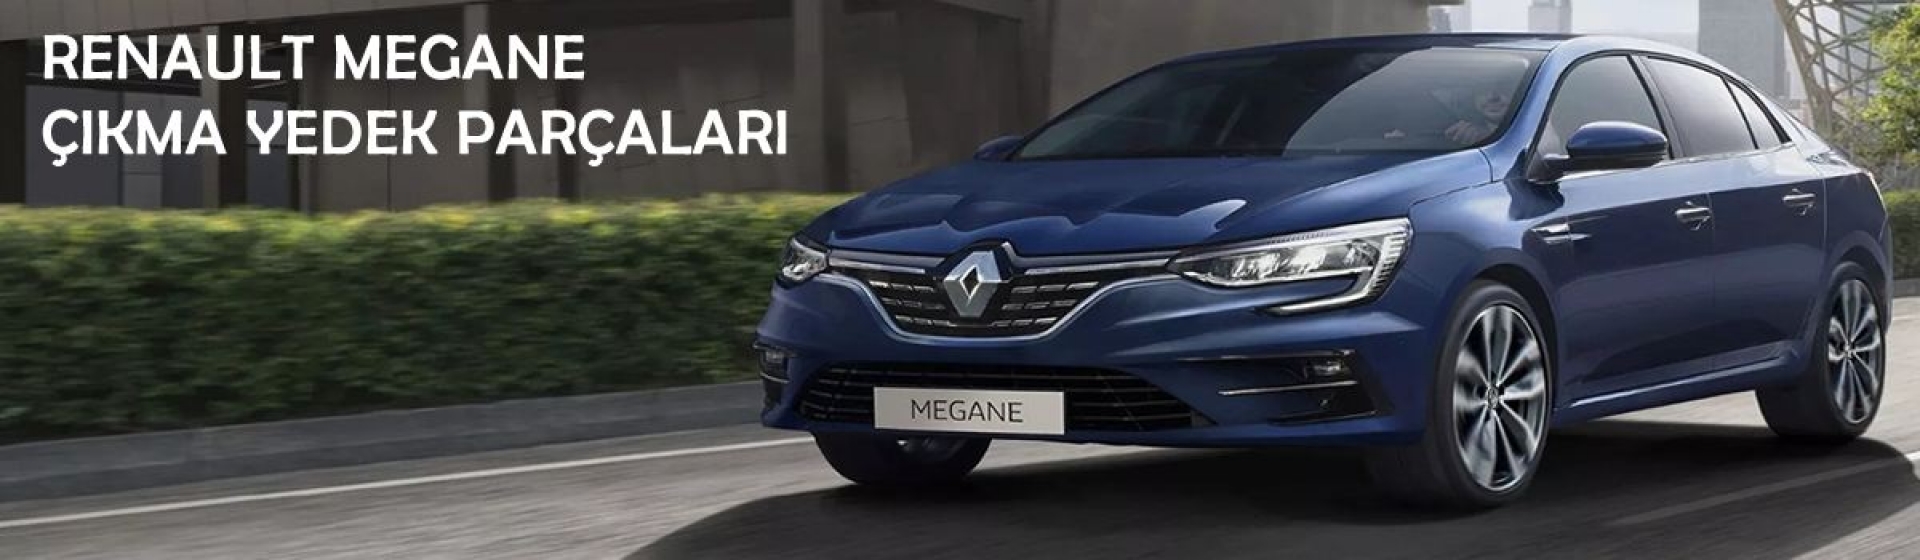 Renault Megane Çıkma Yedek Parçaları